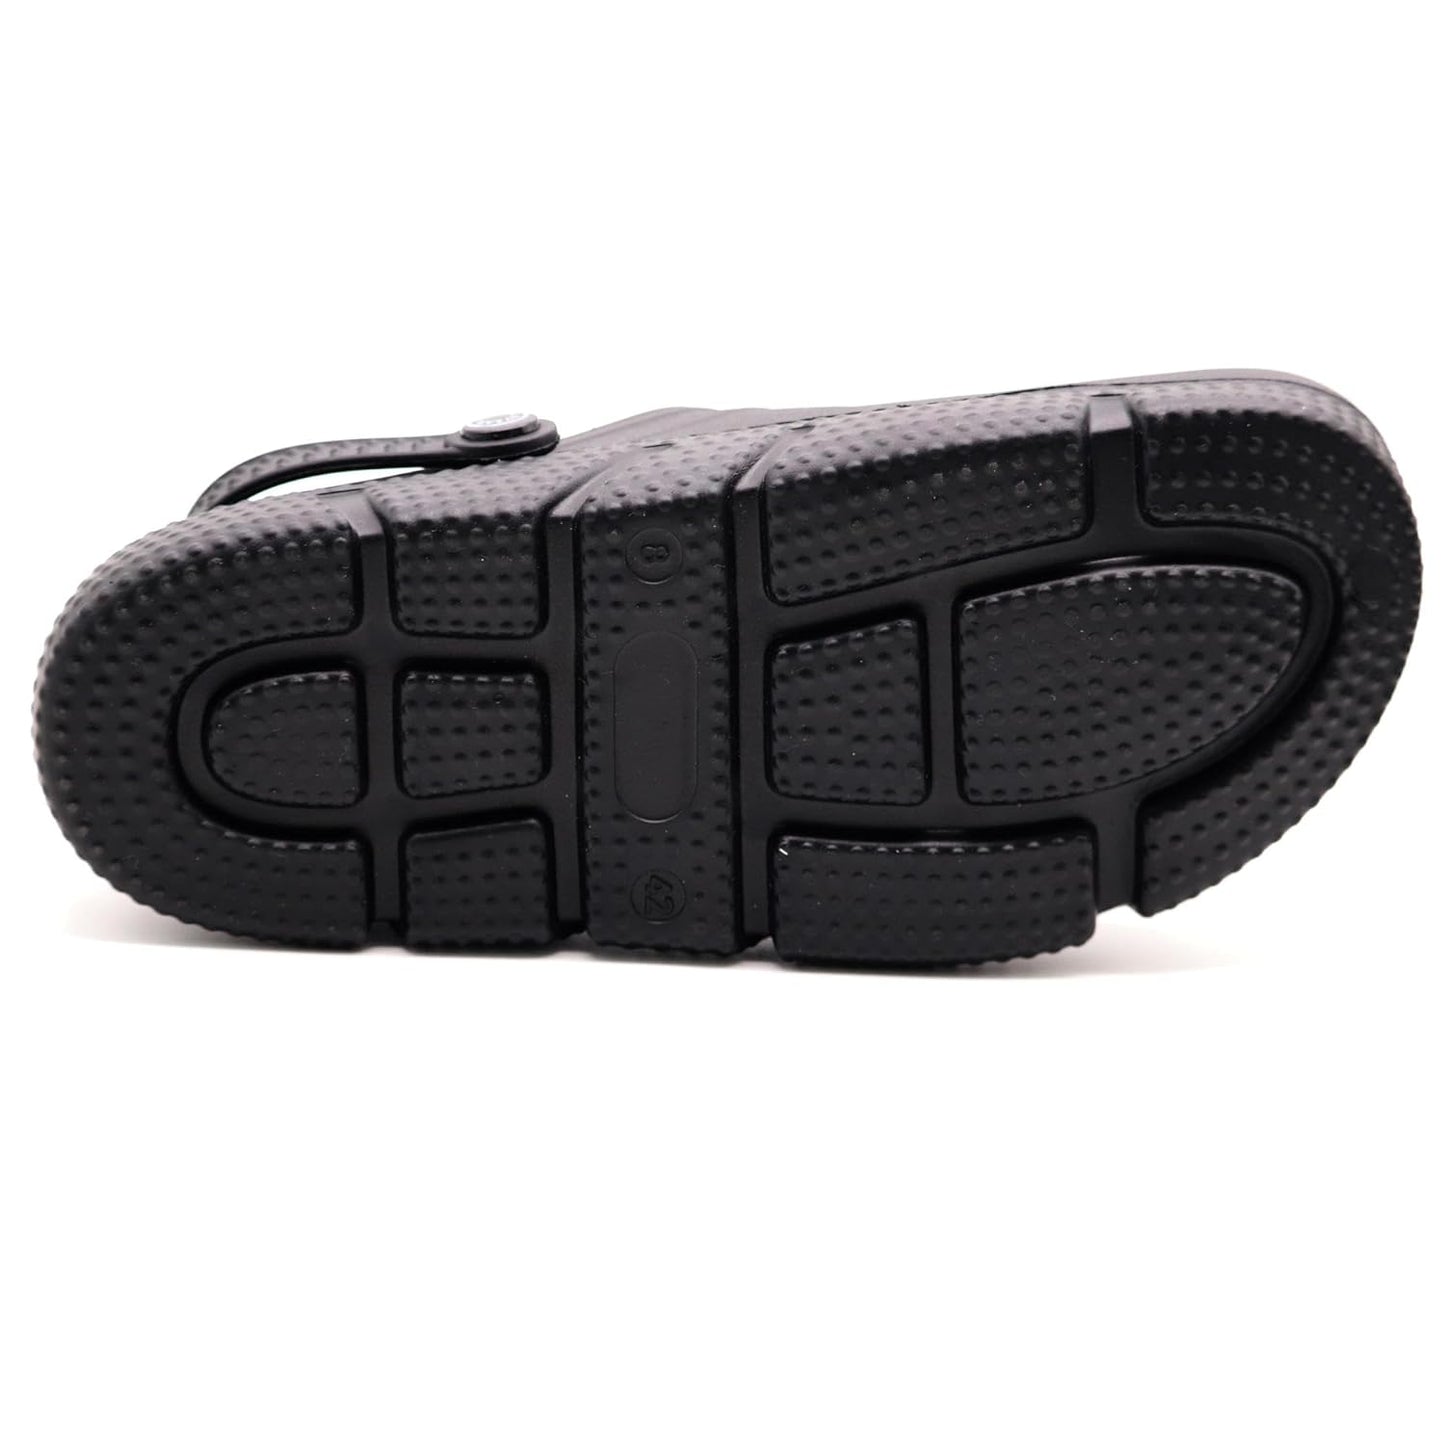 SVAAR Mens Super Comfortable Clogs  Sandals with Adjustable Back Strap for Men